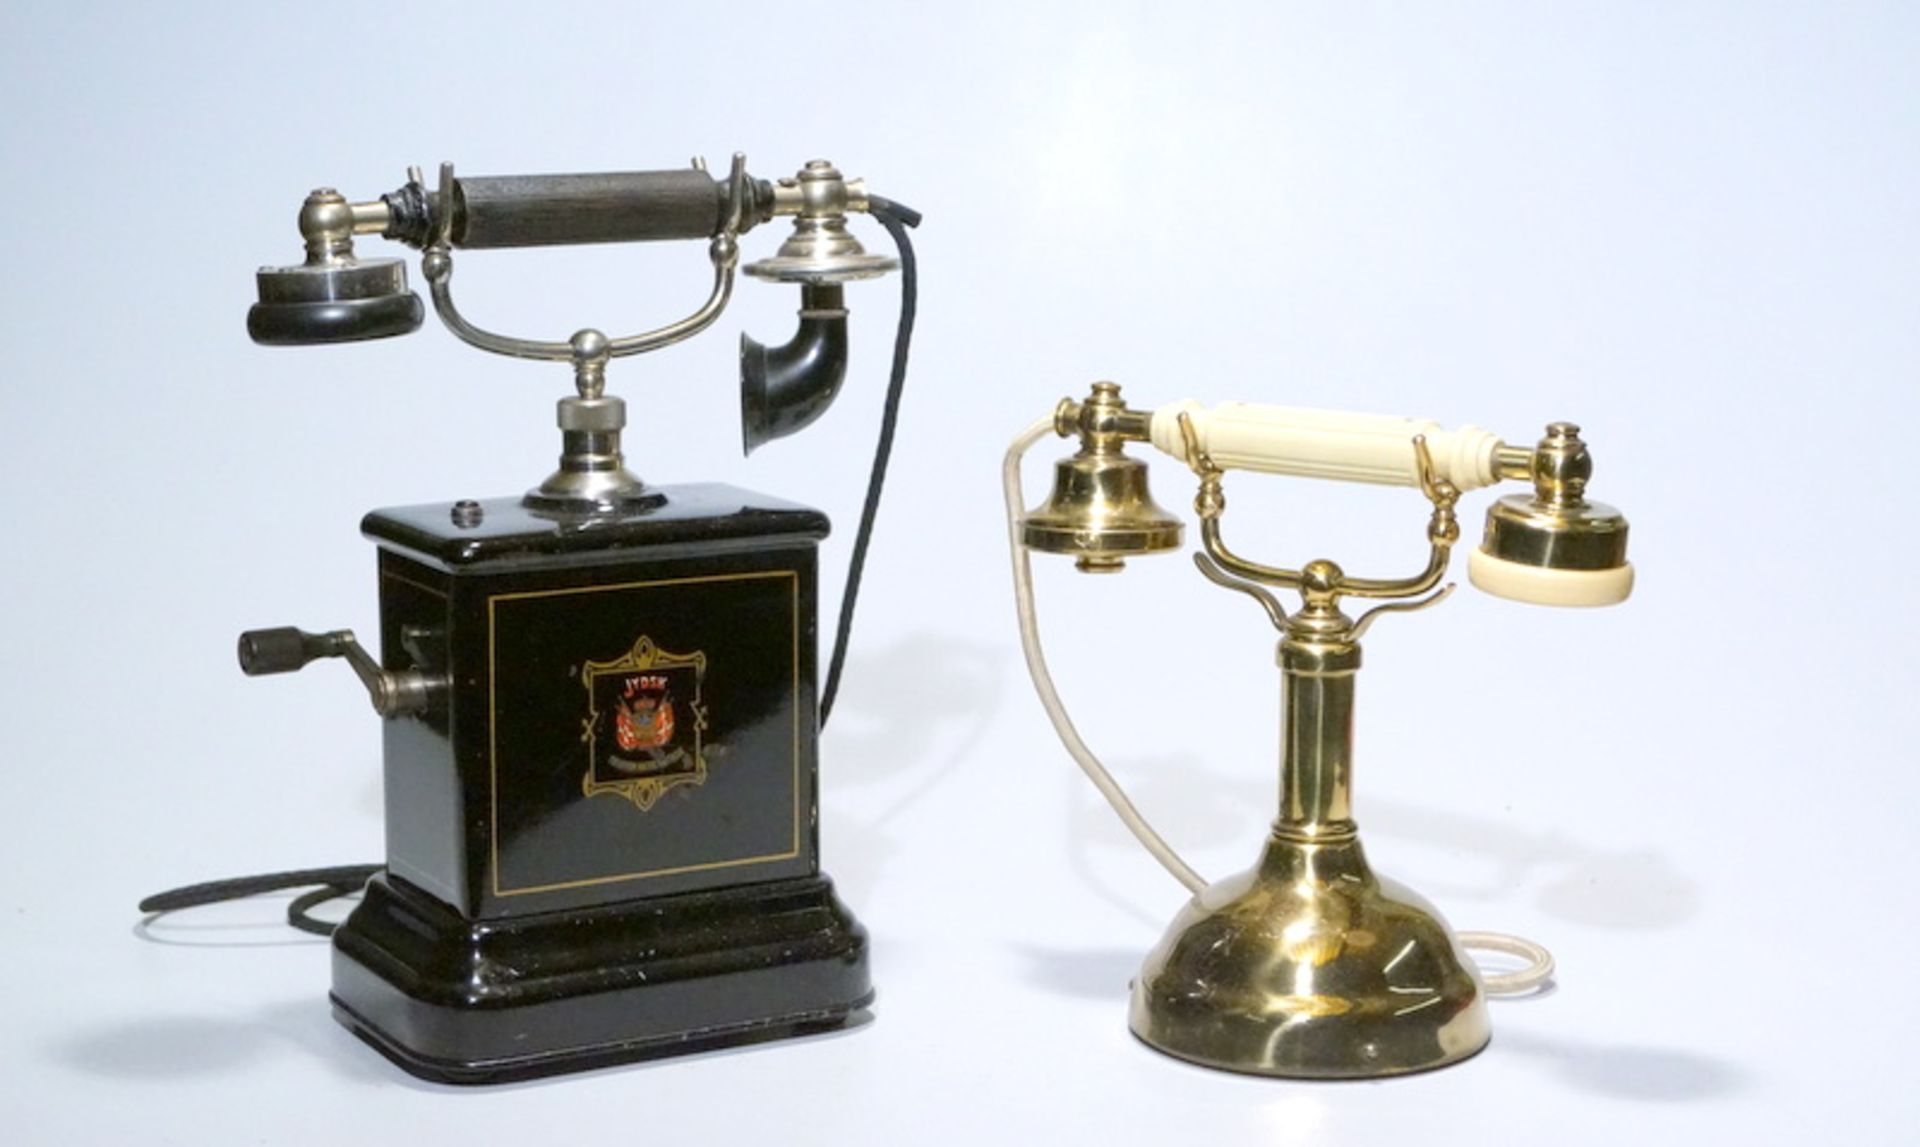 Historisches HaustelefonMessing, vergoldet, Bakelit, ungeprüfte Funktion, Höhe 24cm, Zustand 2 -, (